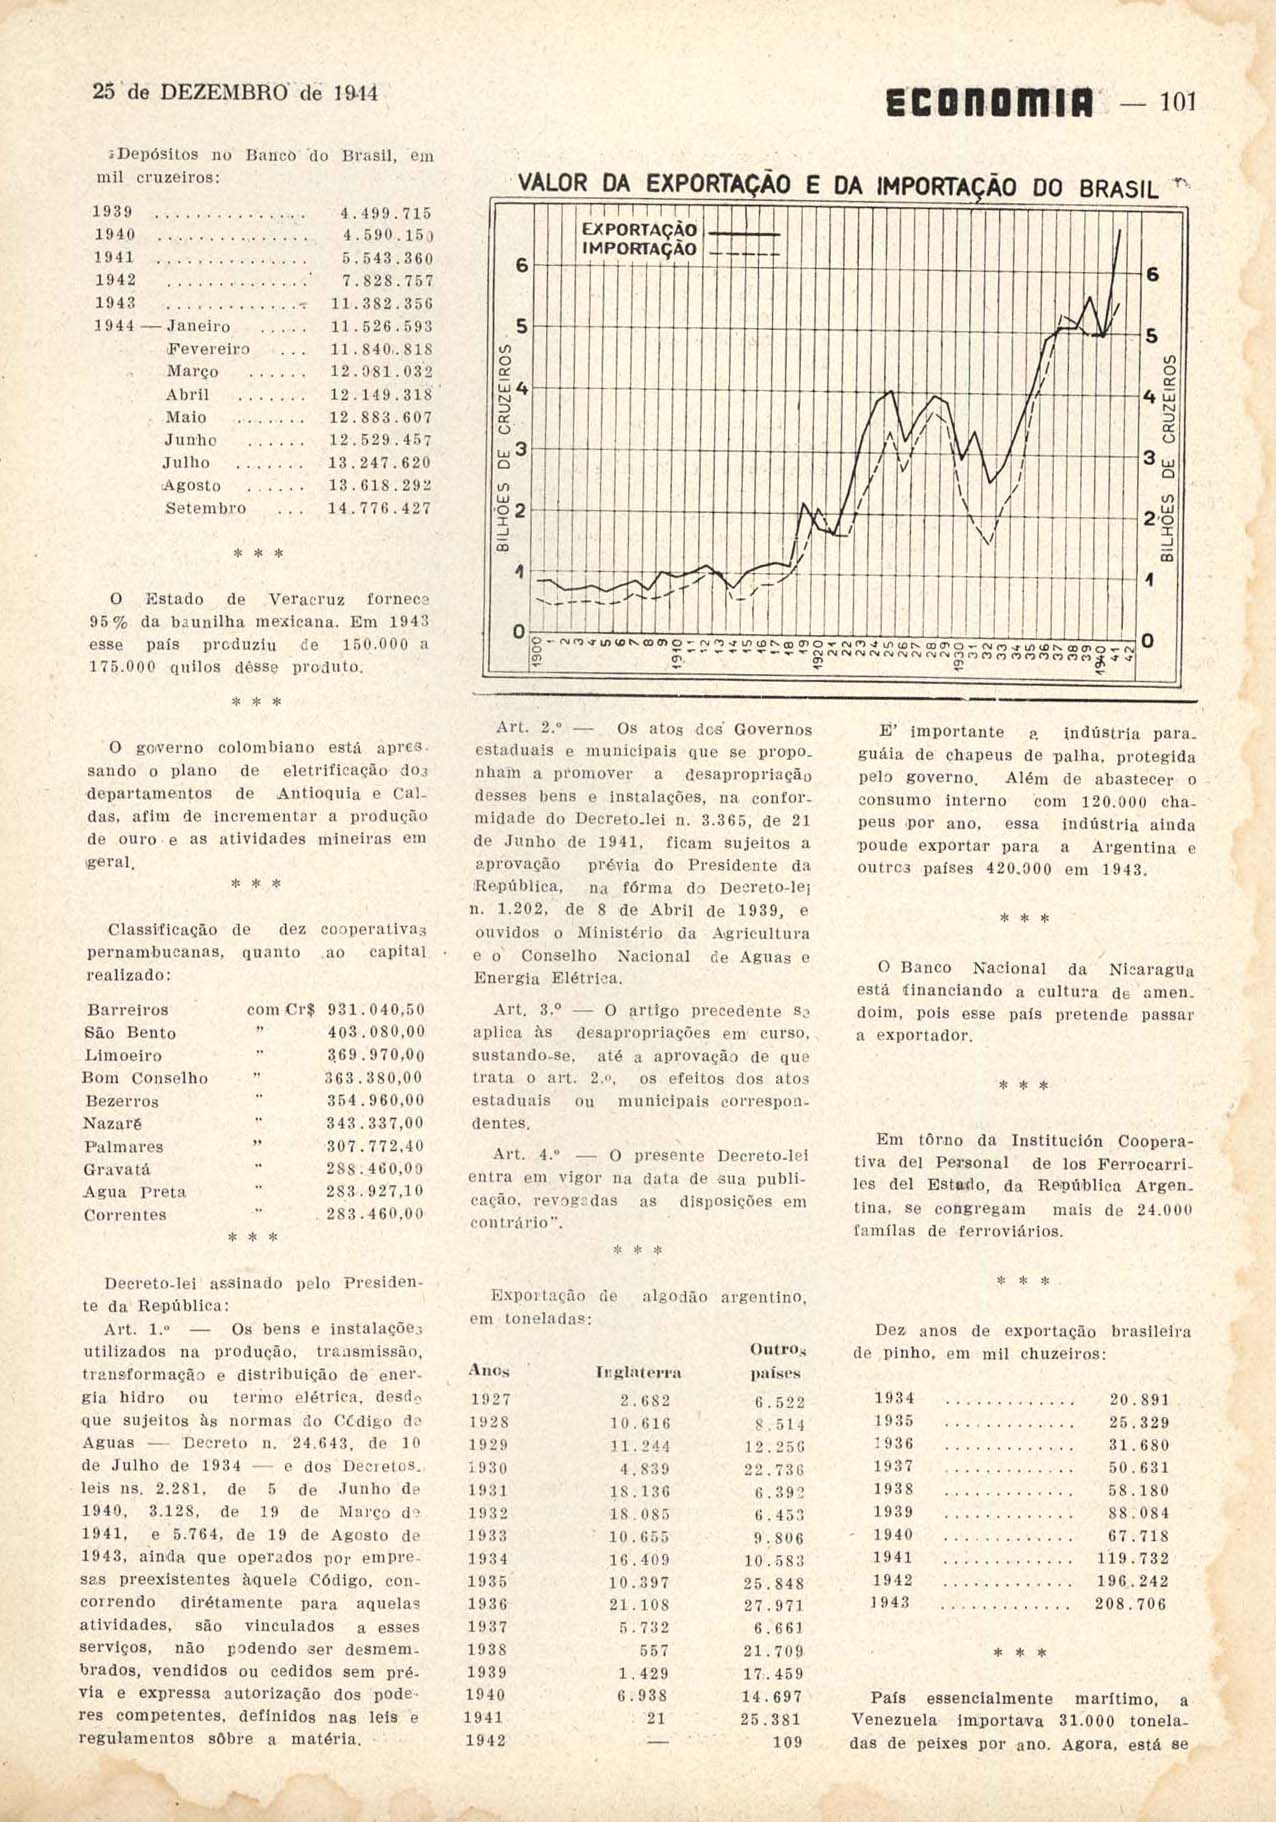 VALOR da exportação e da importação do Brasil. Economia, Rio de Janeiro, n. 67, p. 101 e 103, dez. 1944.